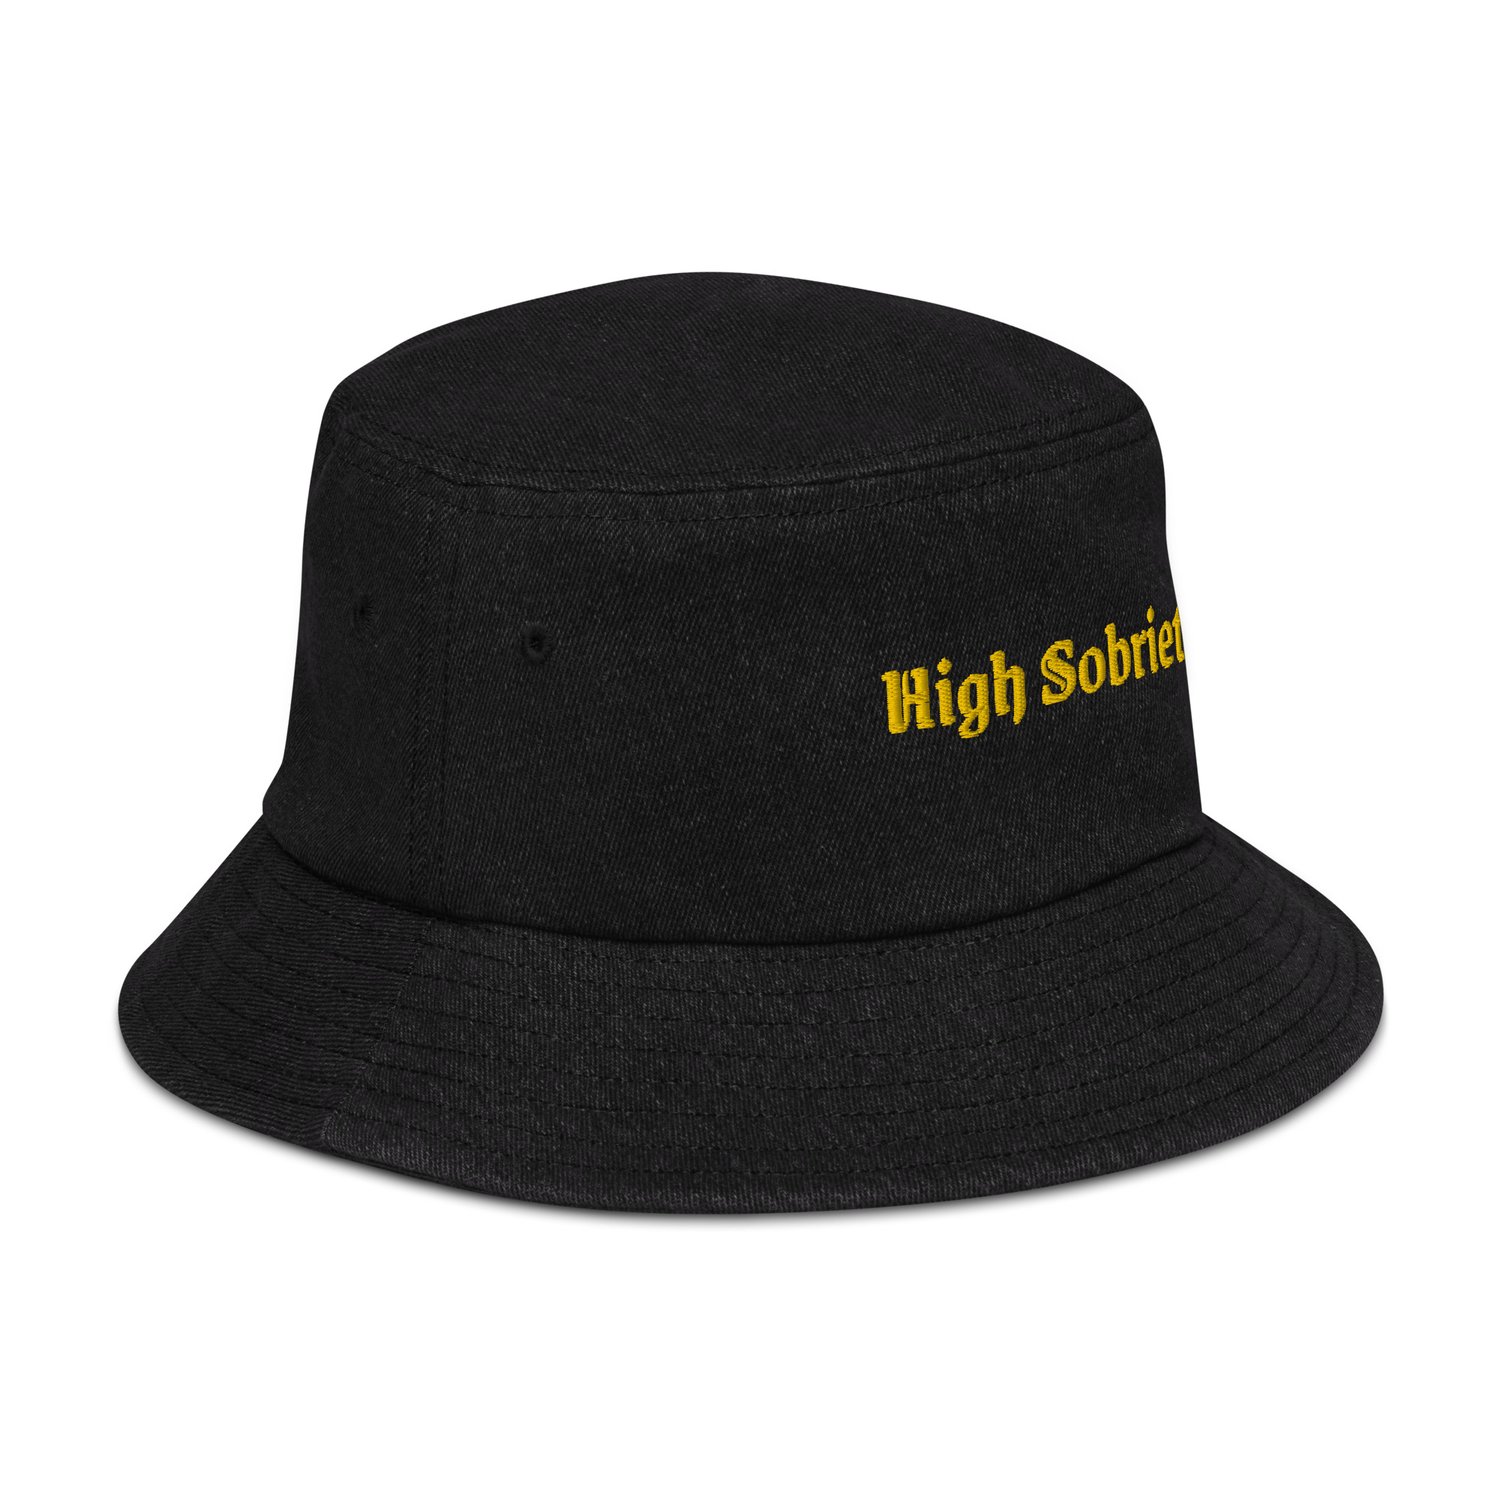 Image of "High Sobriety" Denim bucket hat